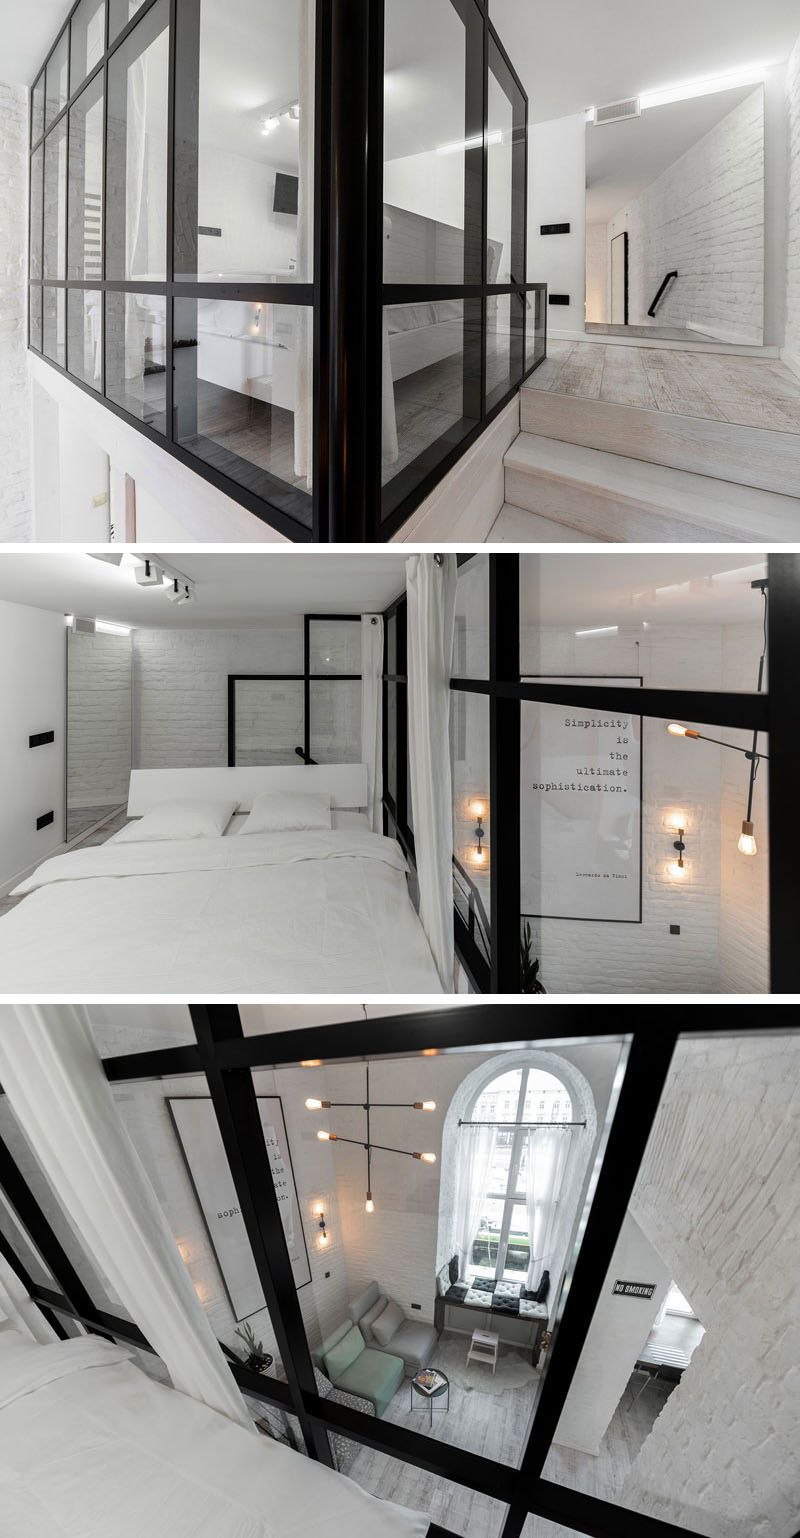  Эта современная спальня в мезонине имеет стеклянную стену в черной рамке, которая выходит на гостиную внизу. # Спальня # СовременнаяСпальня # Стеклянная стена # МезонинСпальня 